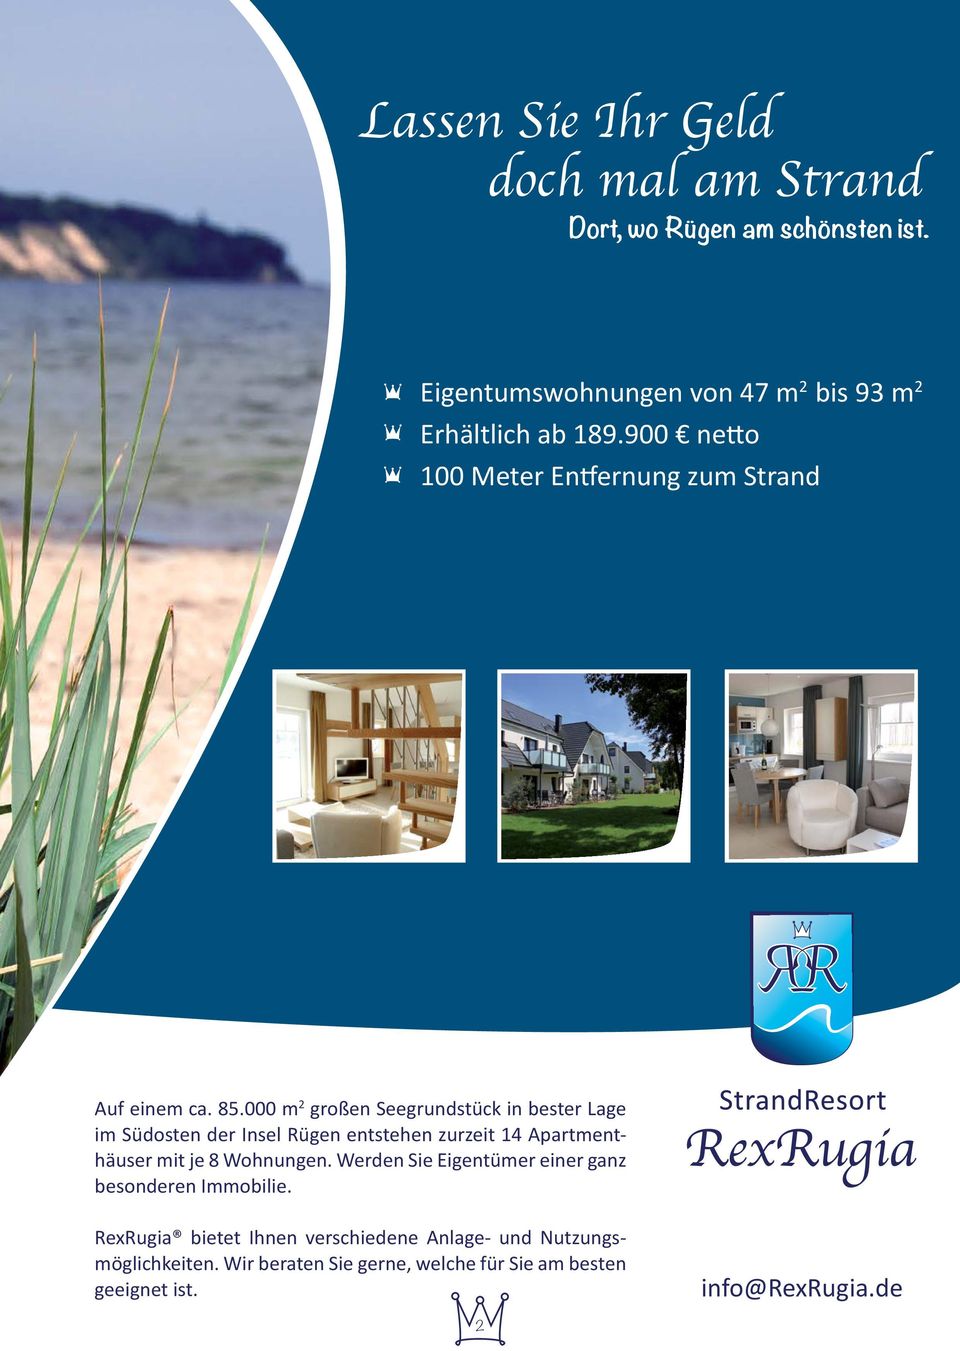 000 m 2 großen Seegrundstück in bester Lage im Südosten der Insel Rügen entstehen zurzeit 14 Apartmenthäuser mit je 8 Wohnungen.